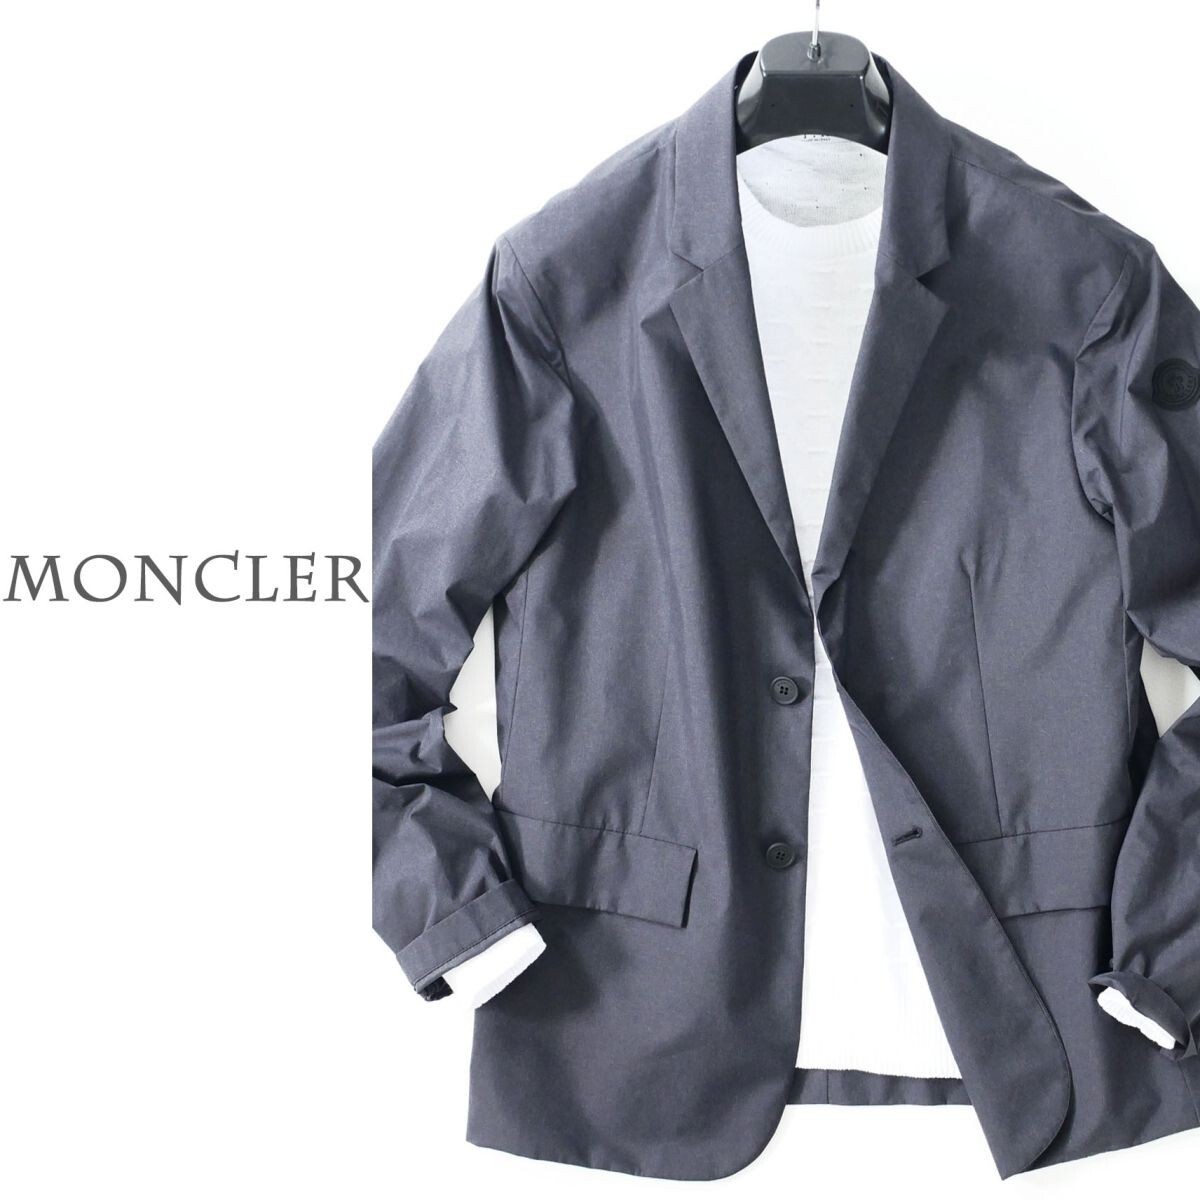 dp431●MONCLERモンクレール●モンクレールワッペン●デザインジャケット●貴重1サイズの画像1